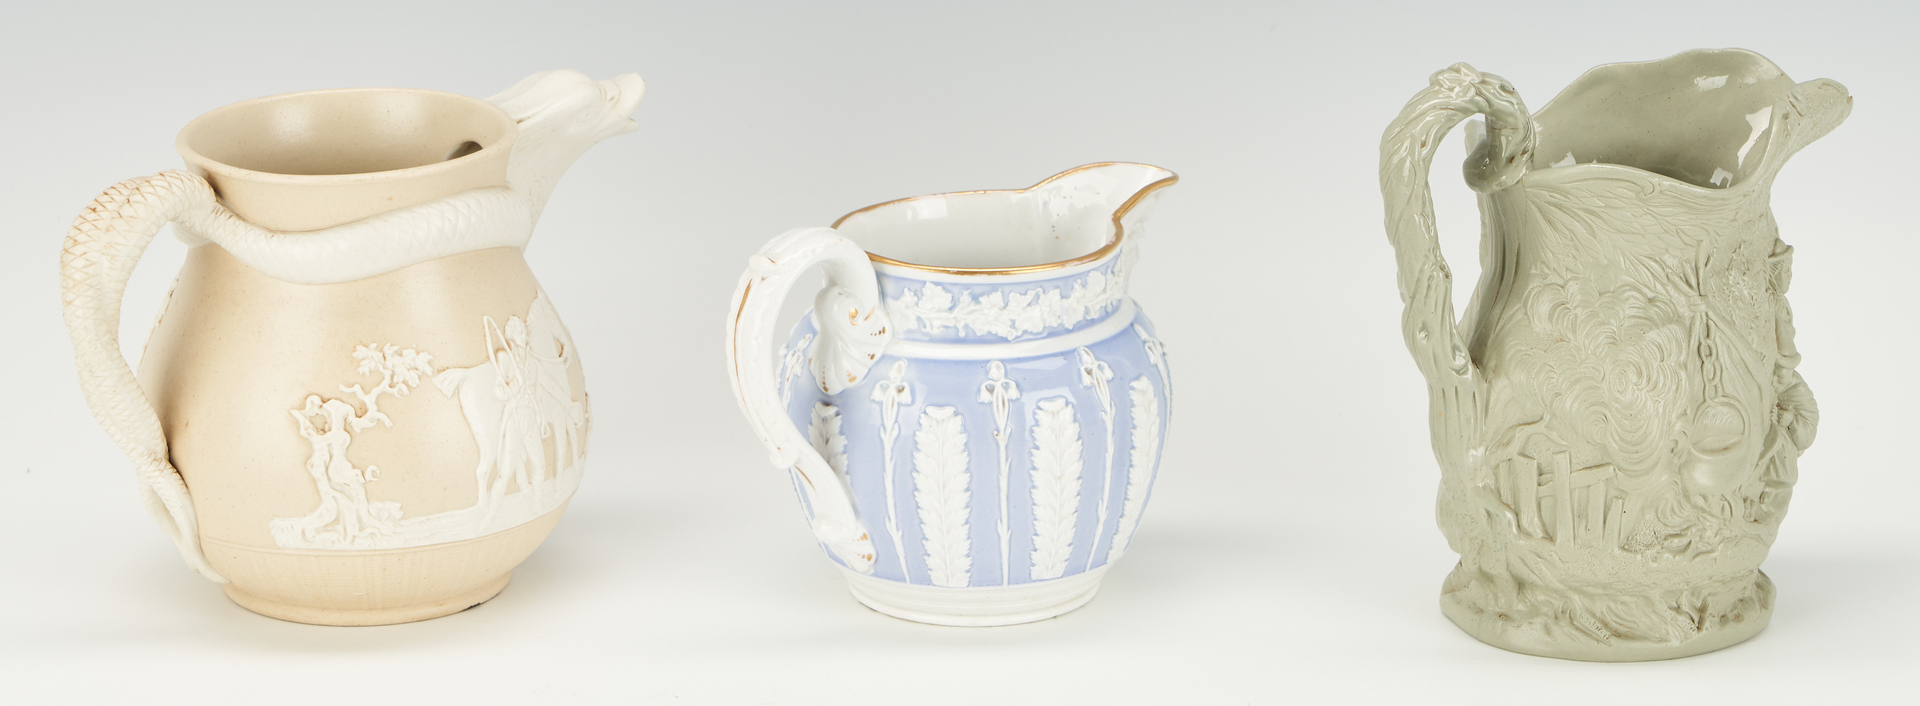 Lot 959: 54 British Ceramic Items, incl. Tassies, Vessels